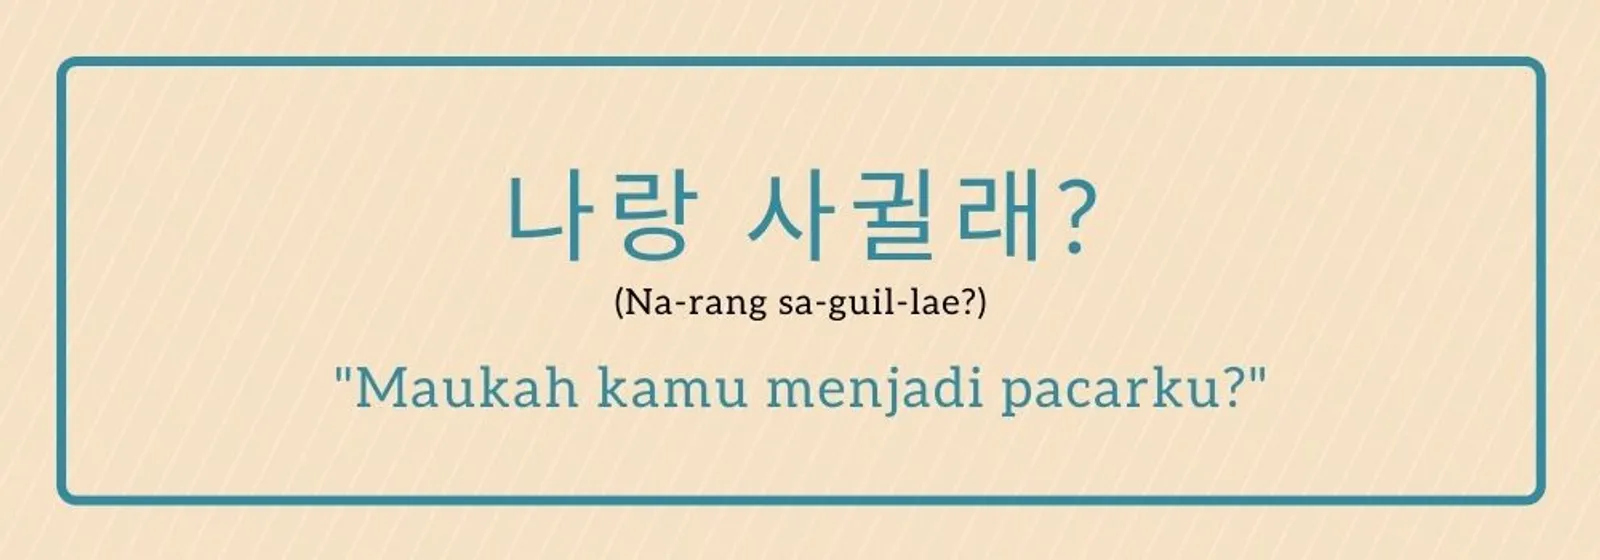 11 Cara Ungkapkan Rasa Sayang dalam Bahasa Korea, So Sweet!